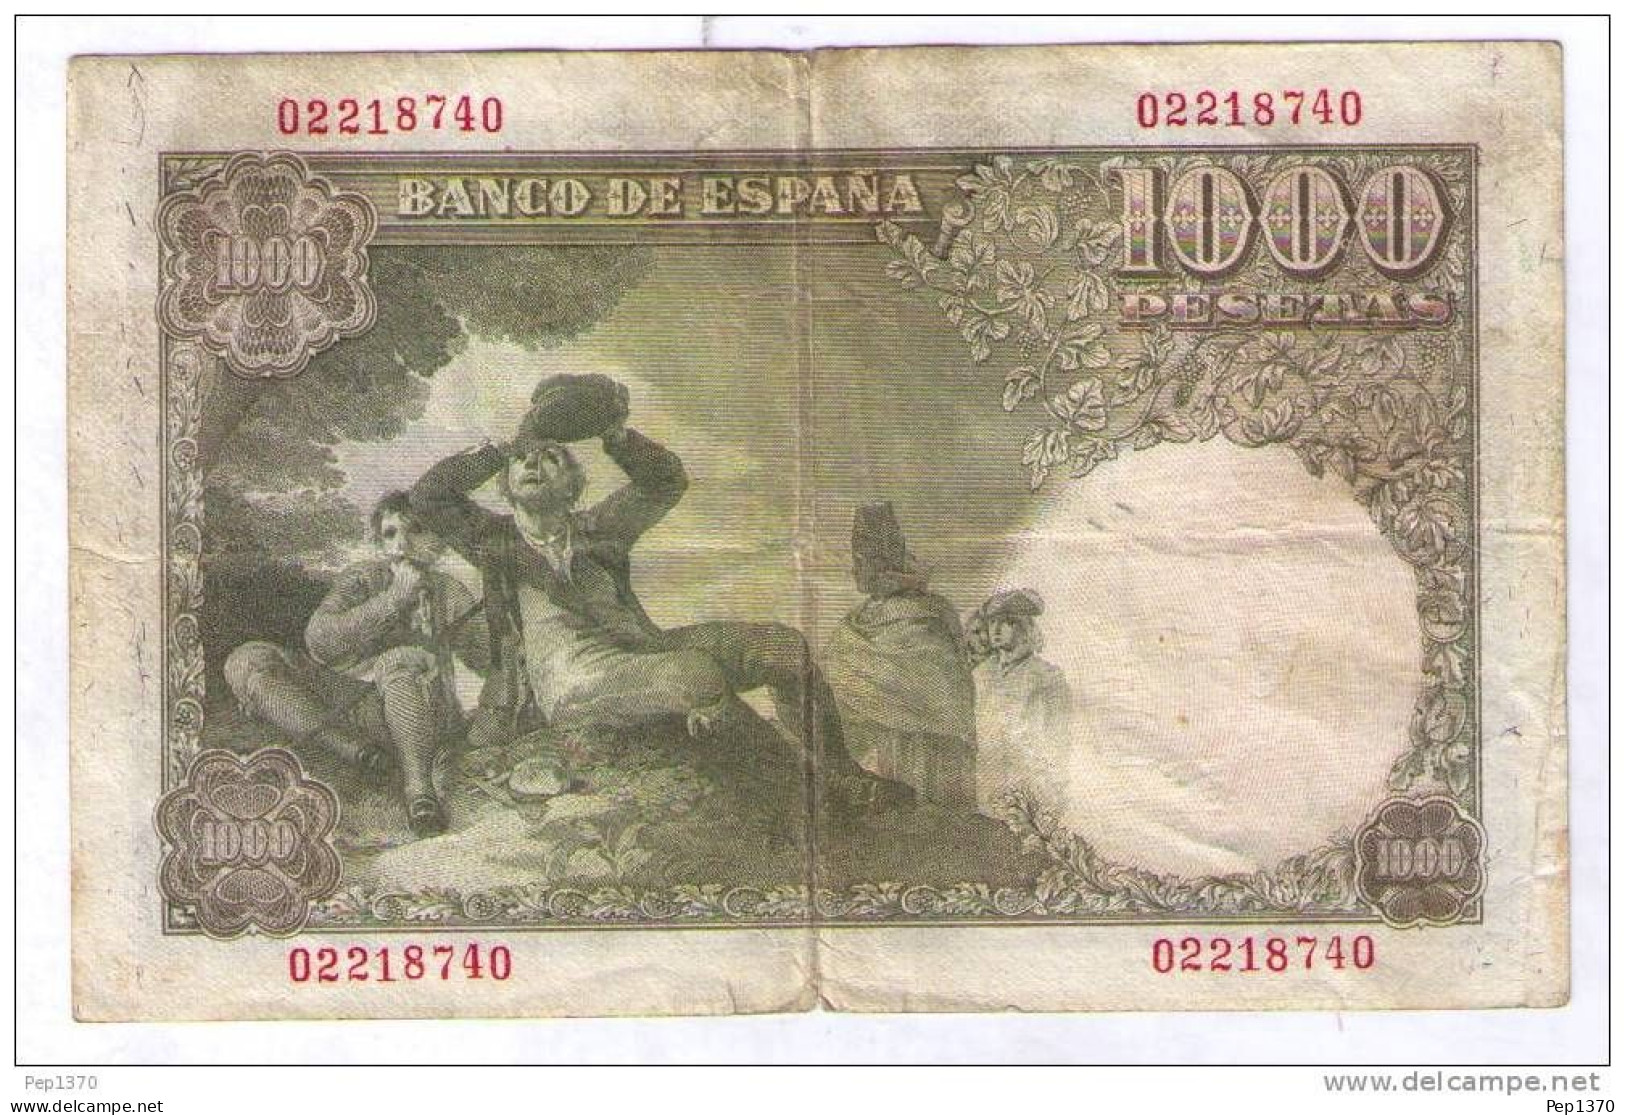 BILLETE DE 1000 PESETAS DE 1949 - RAMON DE SANTILLAN - USADO (VER FOTOS) - 1000 Pesetas